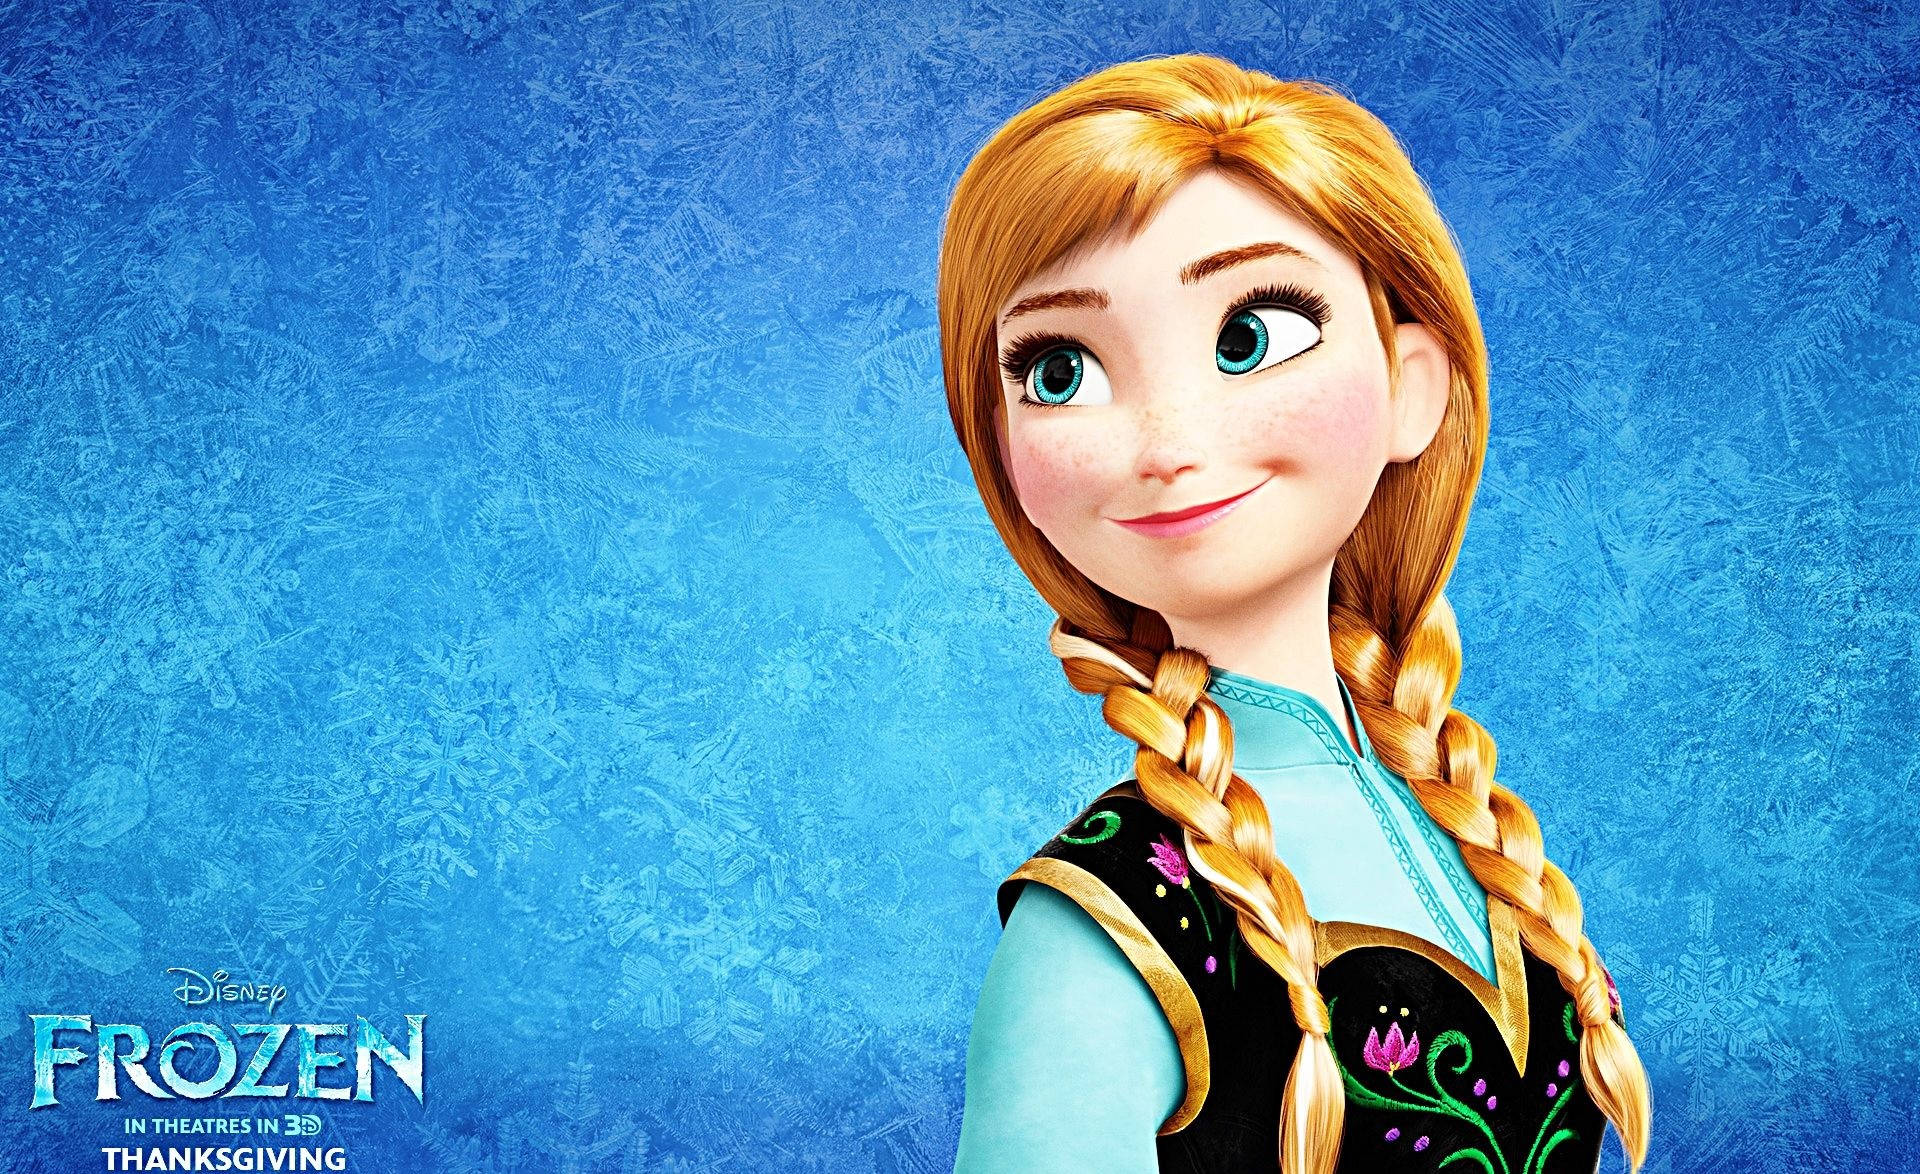 Disney Character Anna Of Frozen Wallpaper